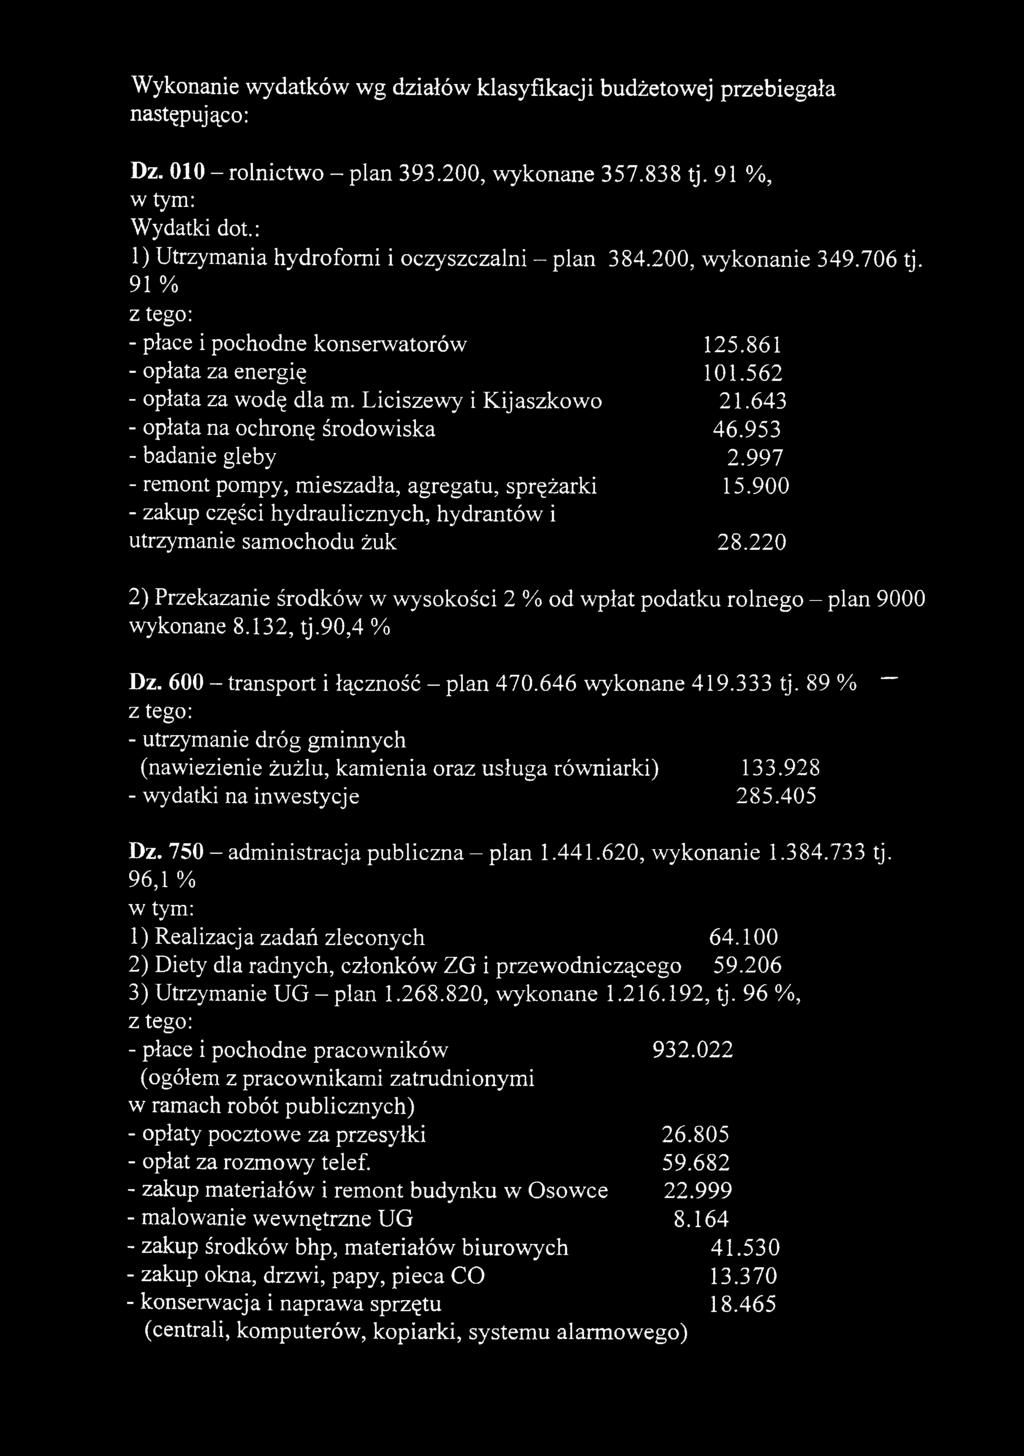 Liciszewy i Kijaszkowo 21.643 - opłata na ochronę środowiska 46.953 - badanie gleby 2.997 - remont pompy, mieszadła, agregatu, sprężarki 15.